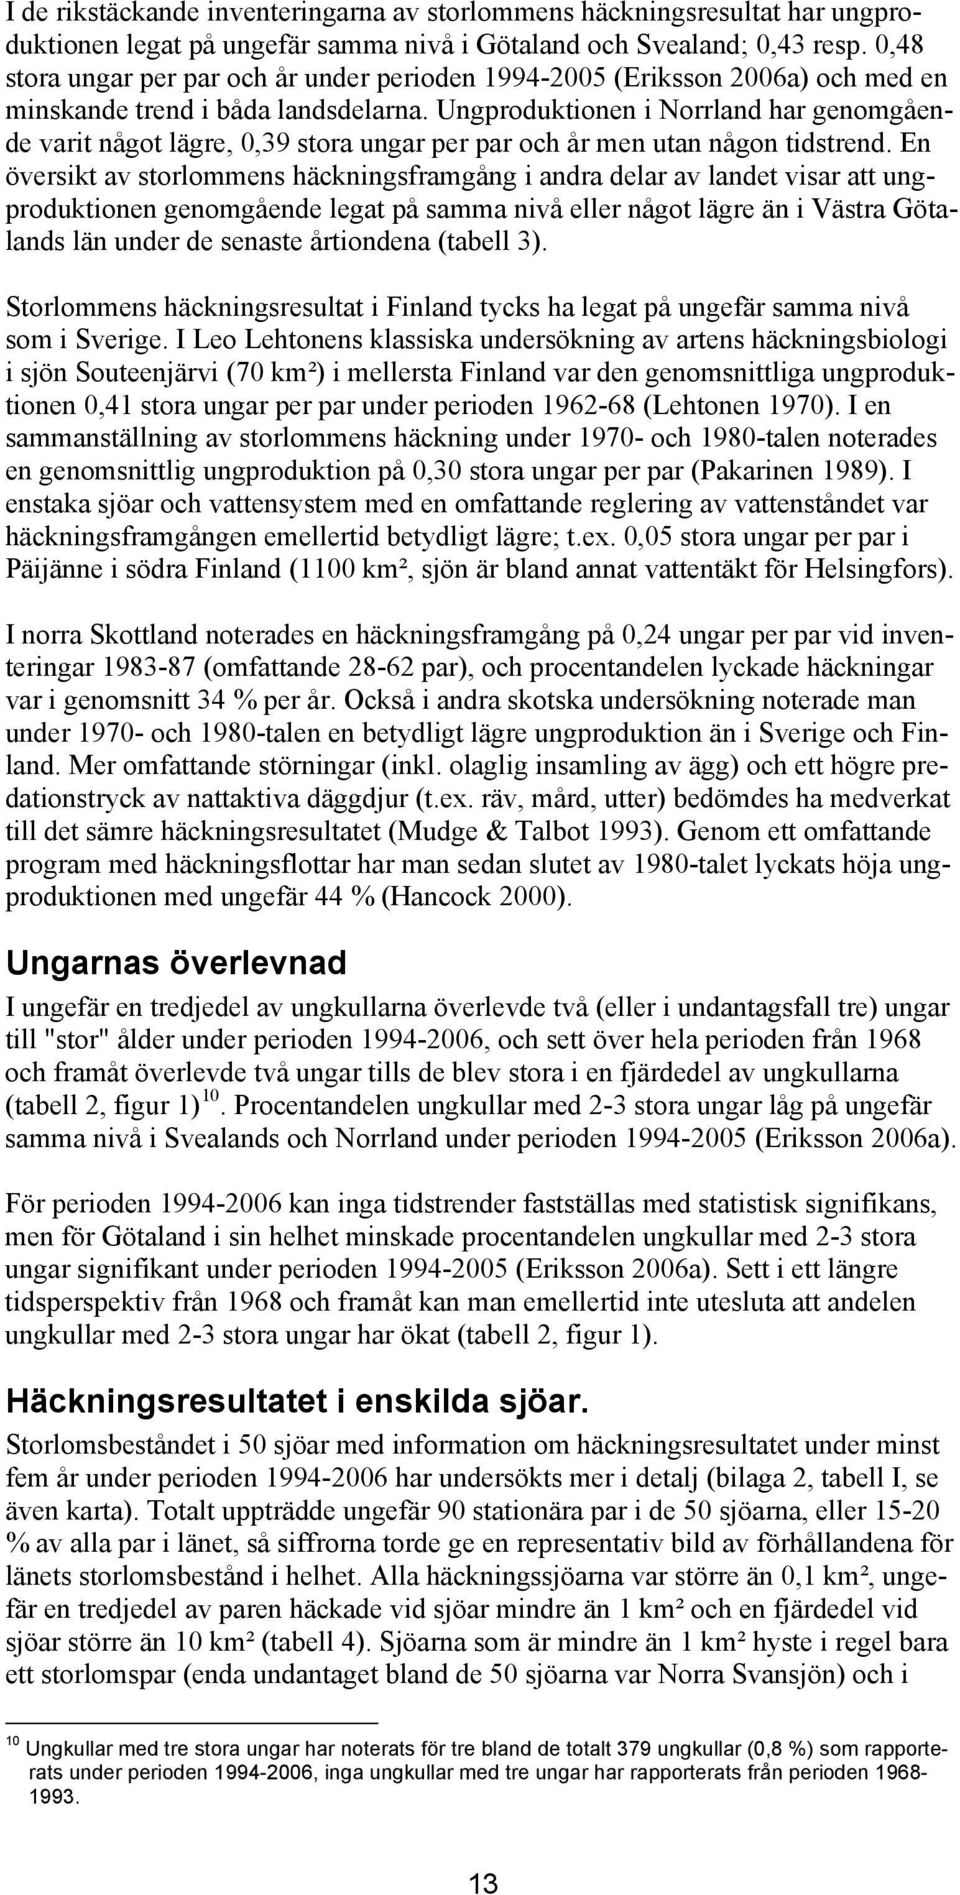 Ungproduktionen i Norrland har genomgående varit något lägre, 0,39 stora ungar per par och år men utan någon tidstrend.